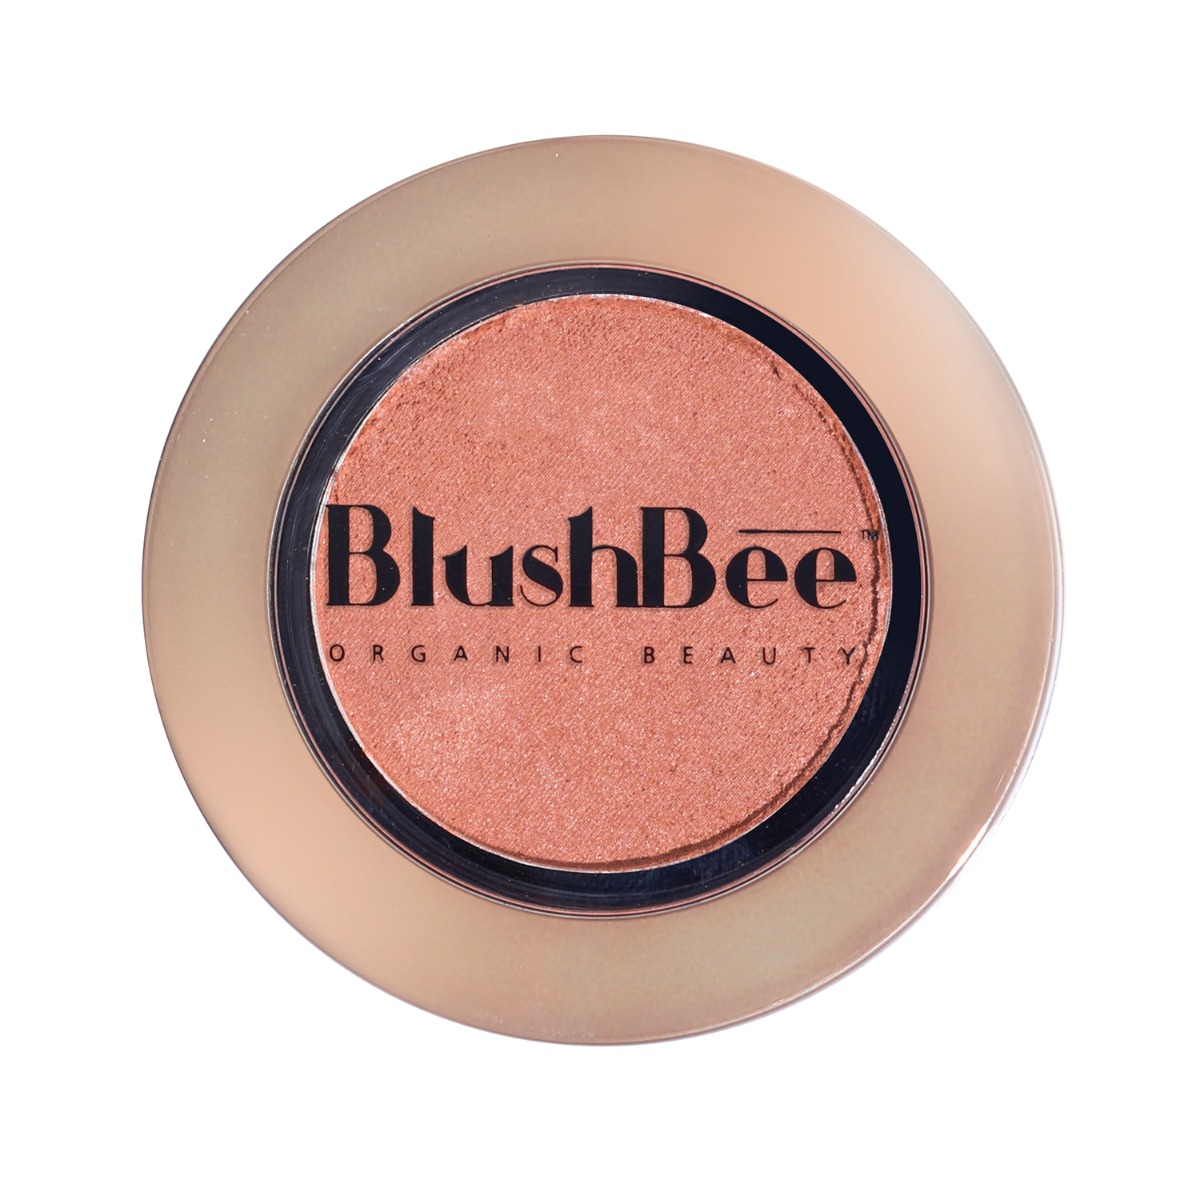 BlushBee Organic Beauty Natural Glow Organic Blush, 2.3gm